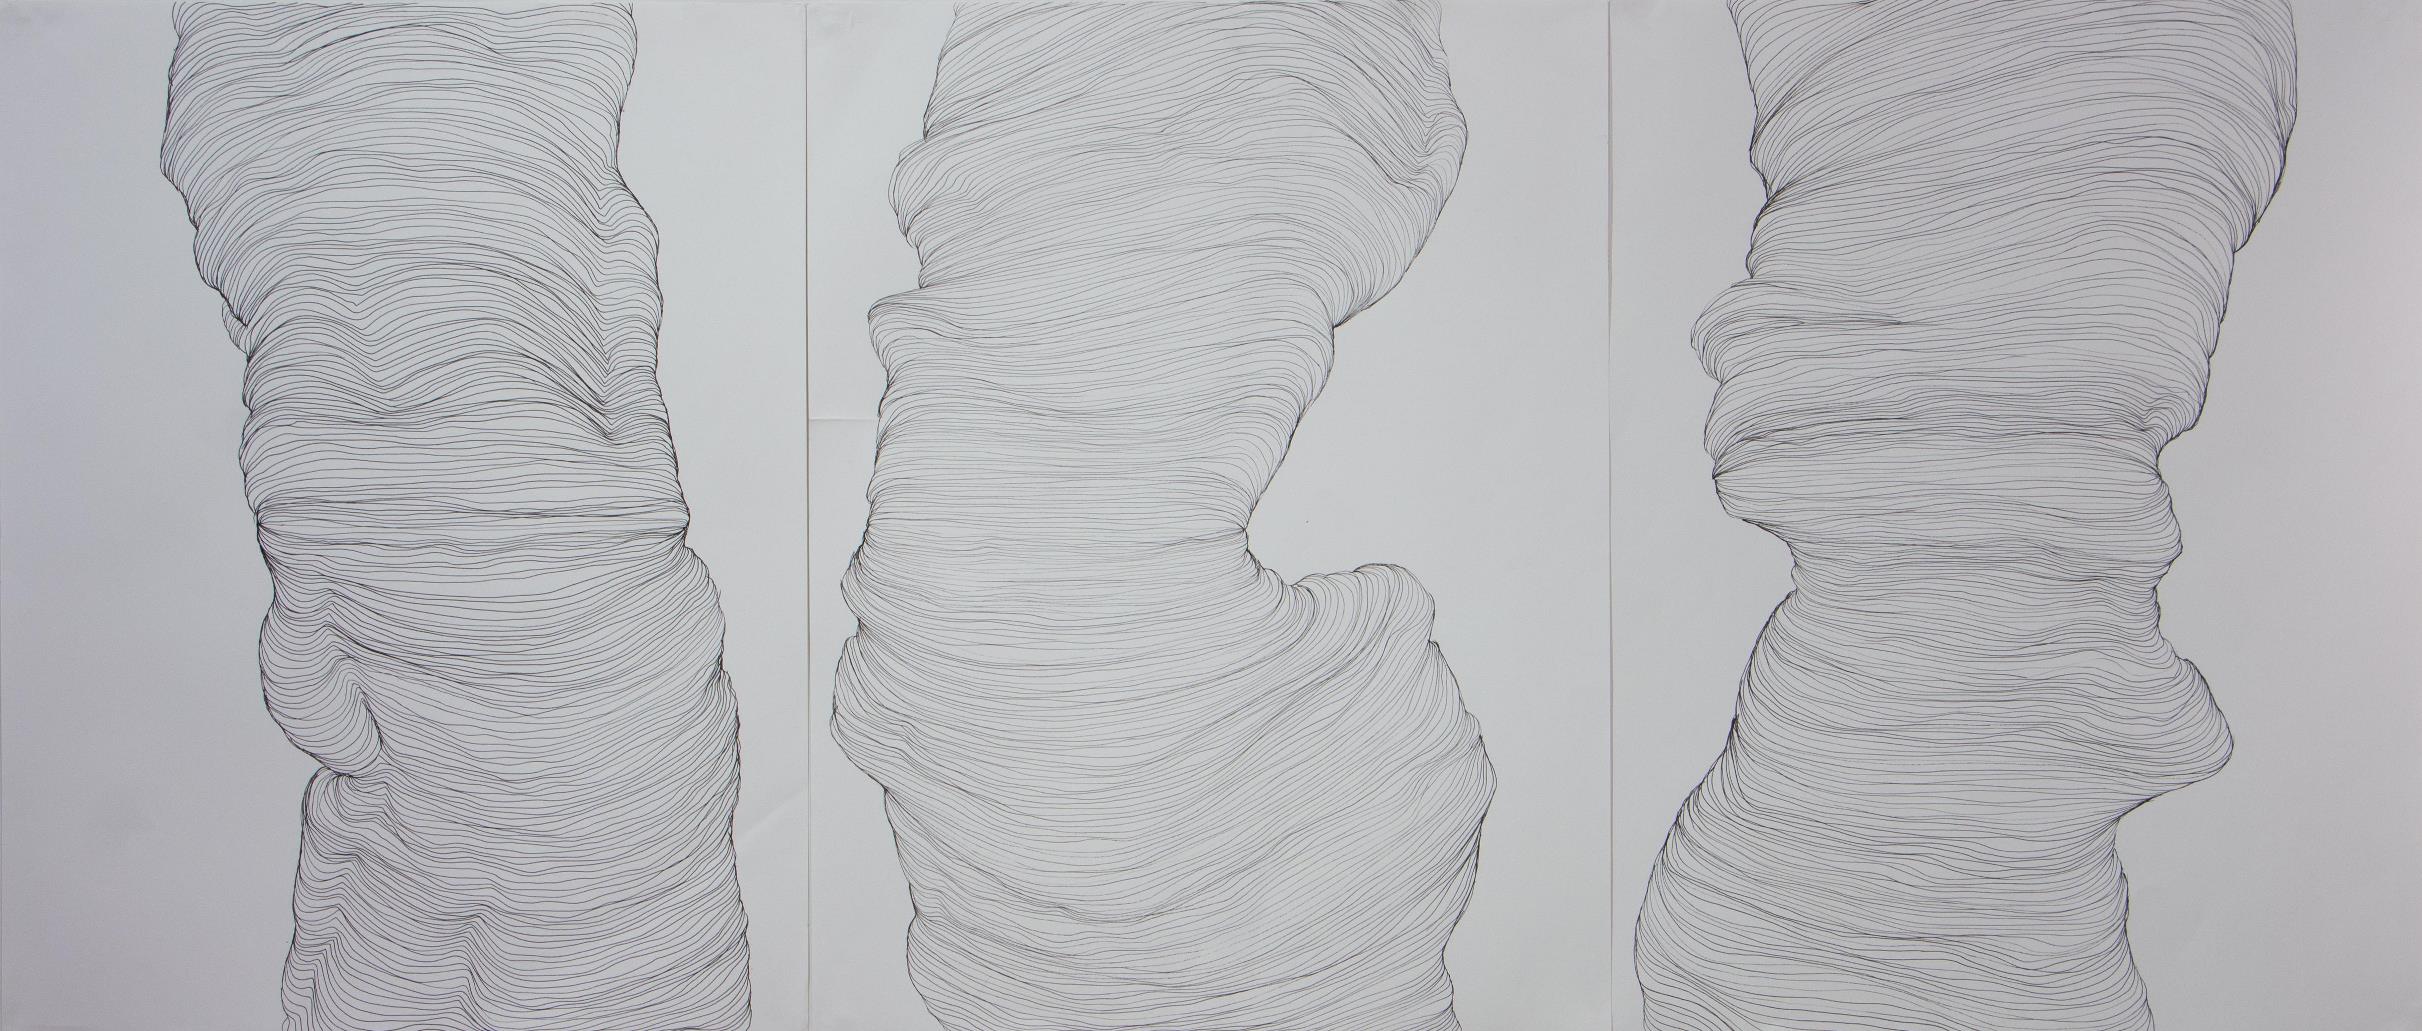 Corpolinha tríptico, Anna Moraes, 2019. Desenho, caneta nanquim sobre papel, 65x50cm cada.